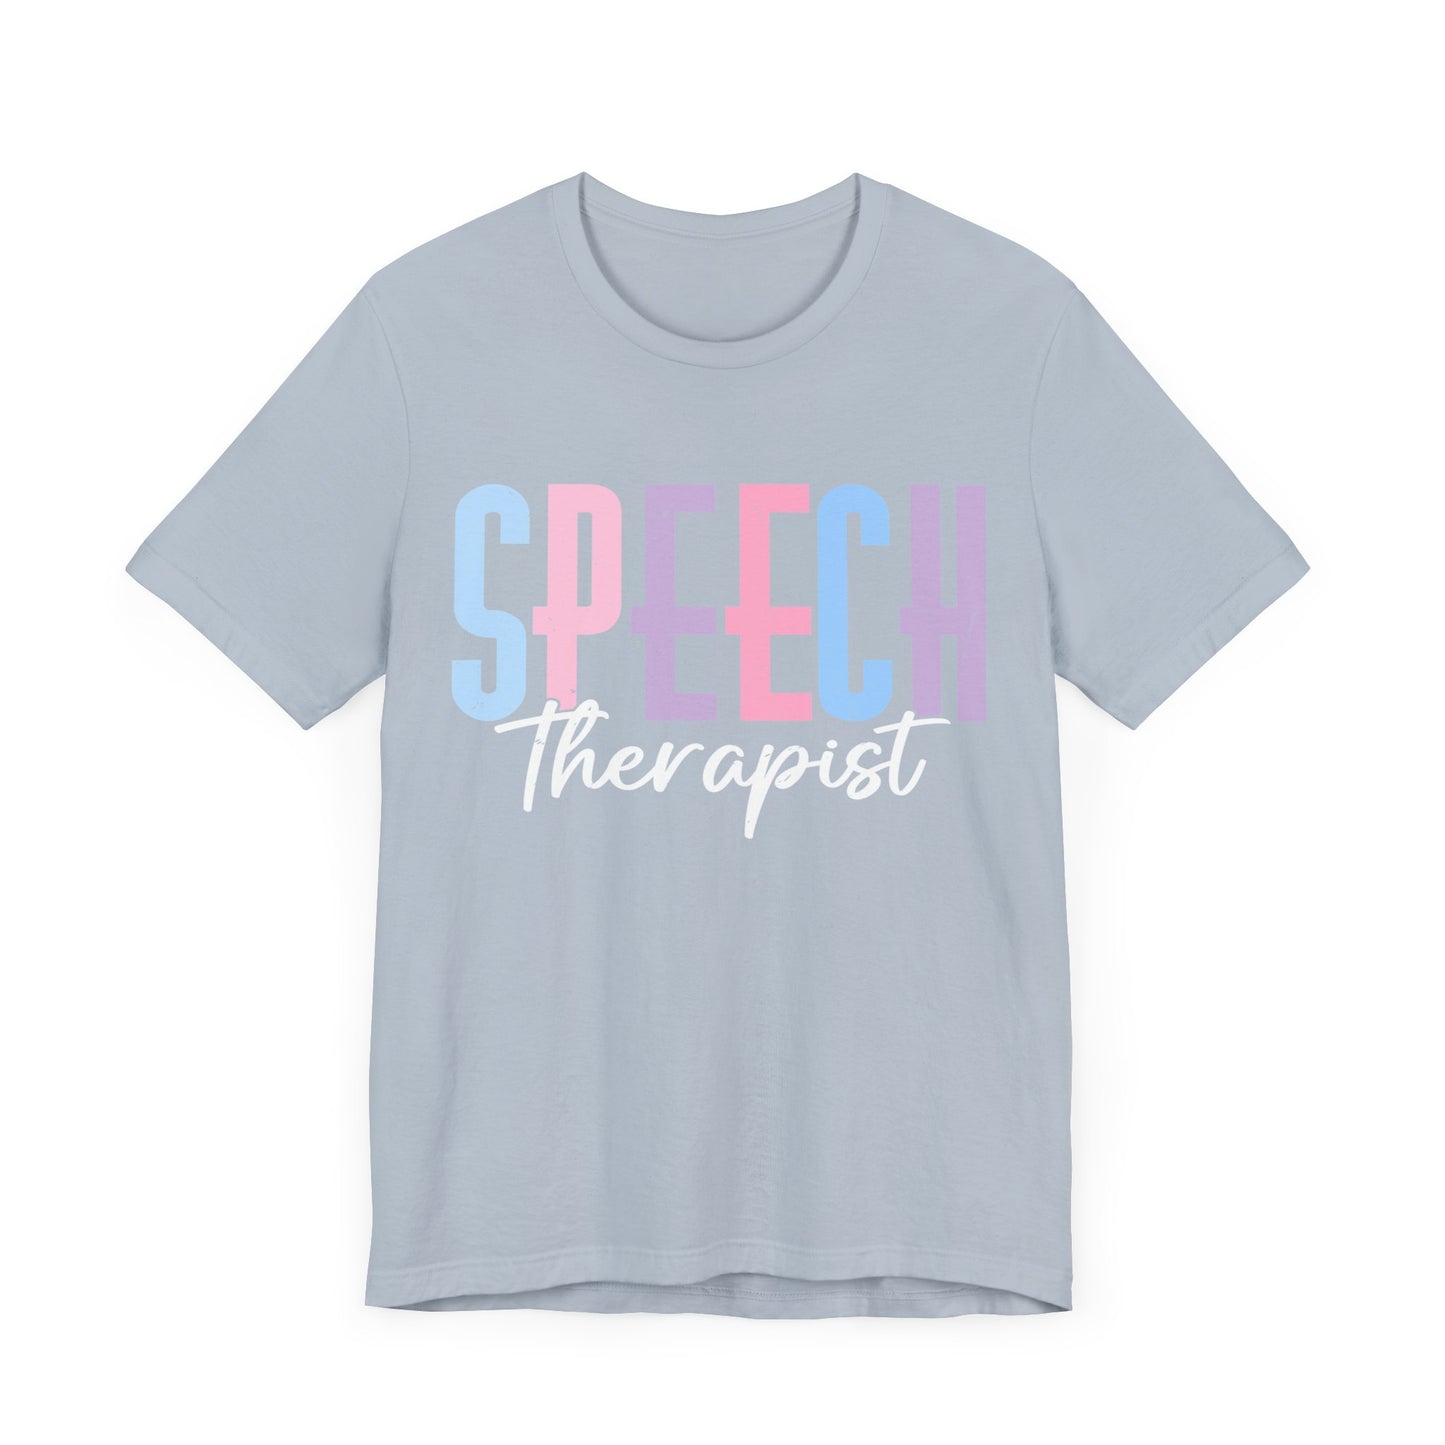 Speech Therapist Shirt, SLP Shirt, Therapist Shirt, Pathologist Shirt